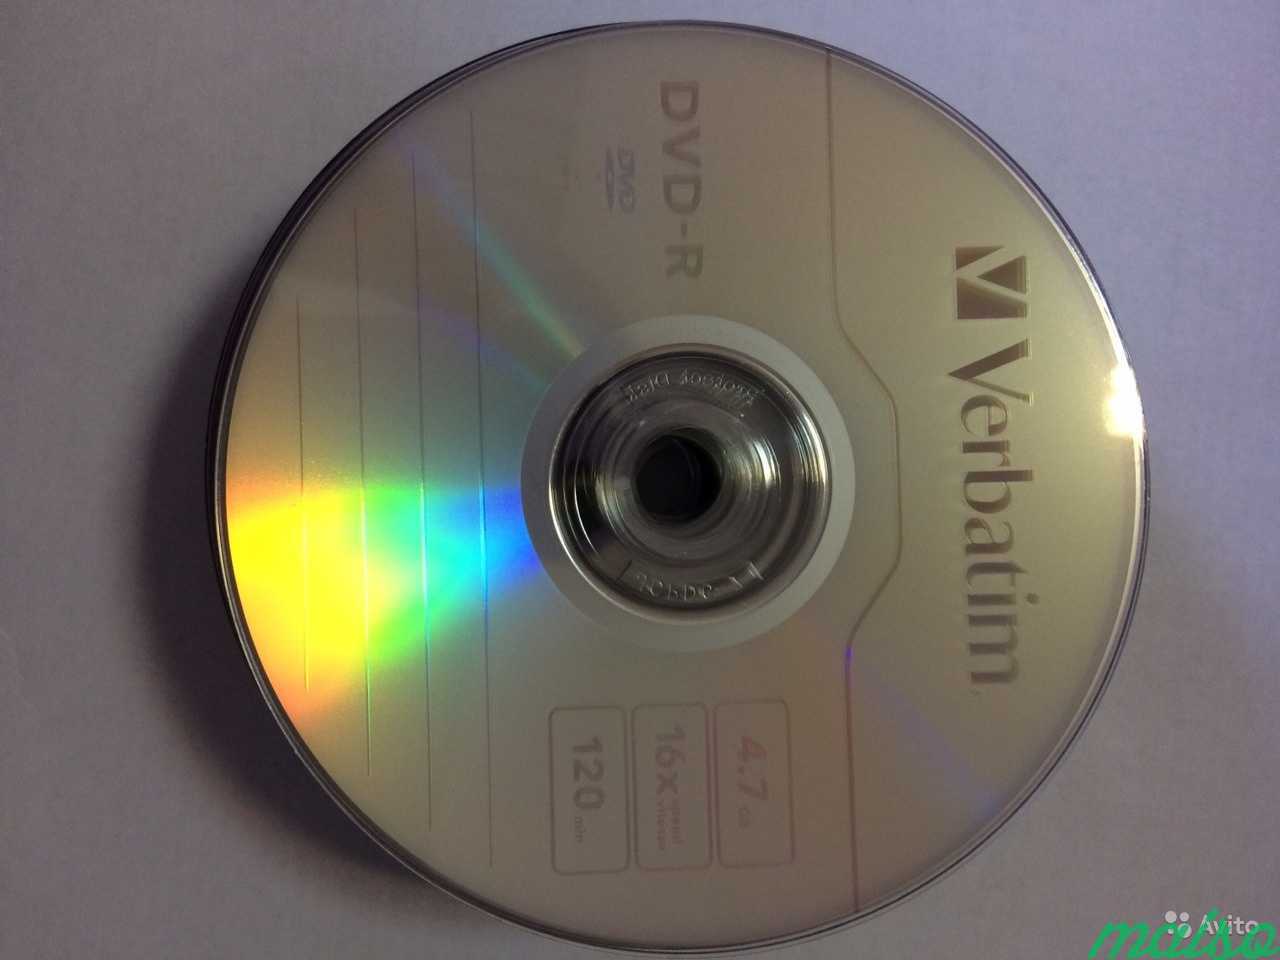 Диски Verbatim DVD-R 4.7GB 120min 50 шт в Санкт-Петербурге. Фото 2